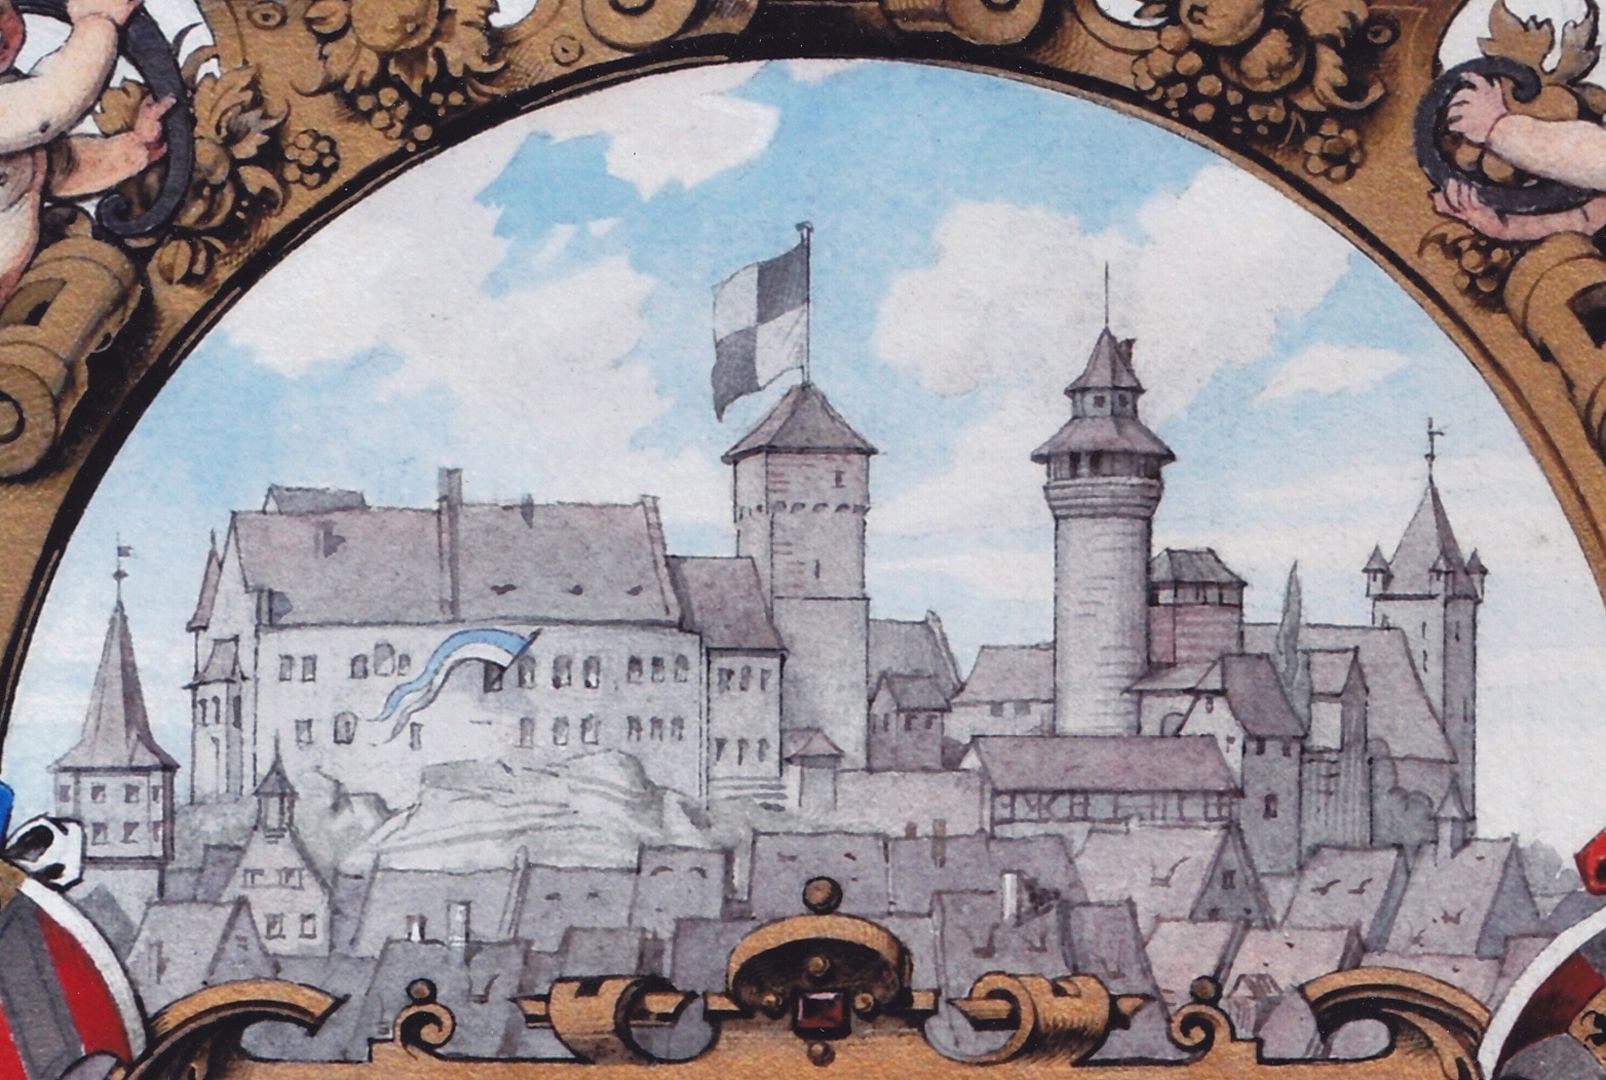 Titelblatt eines Prachteinbandes Nürnberger Burgsilhouette. Auf dem Heidenturm Fahne mit Hohenzollernwappen, im Fenster des Palas weiß-blaue Fahne für das Königreich Bayern